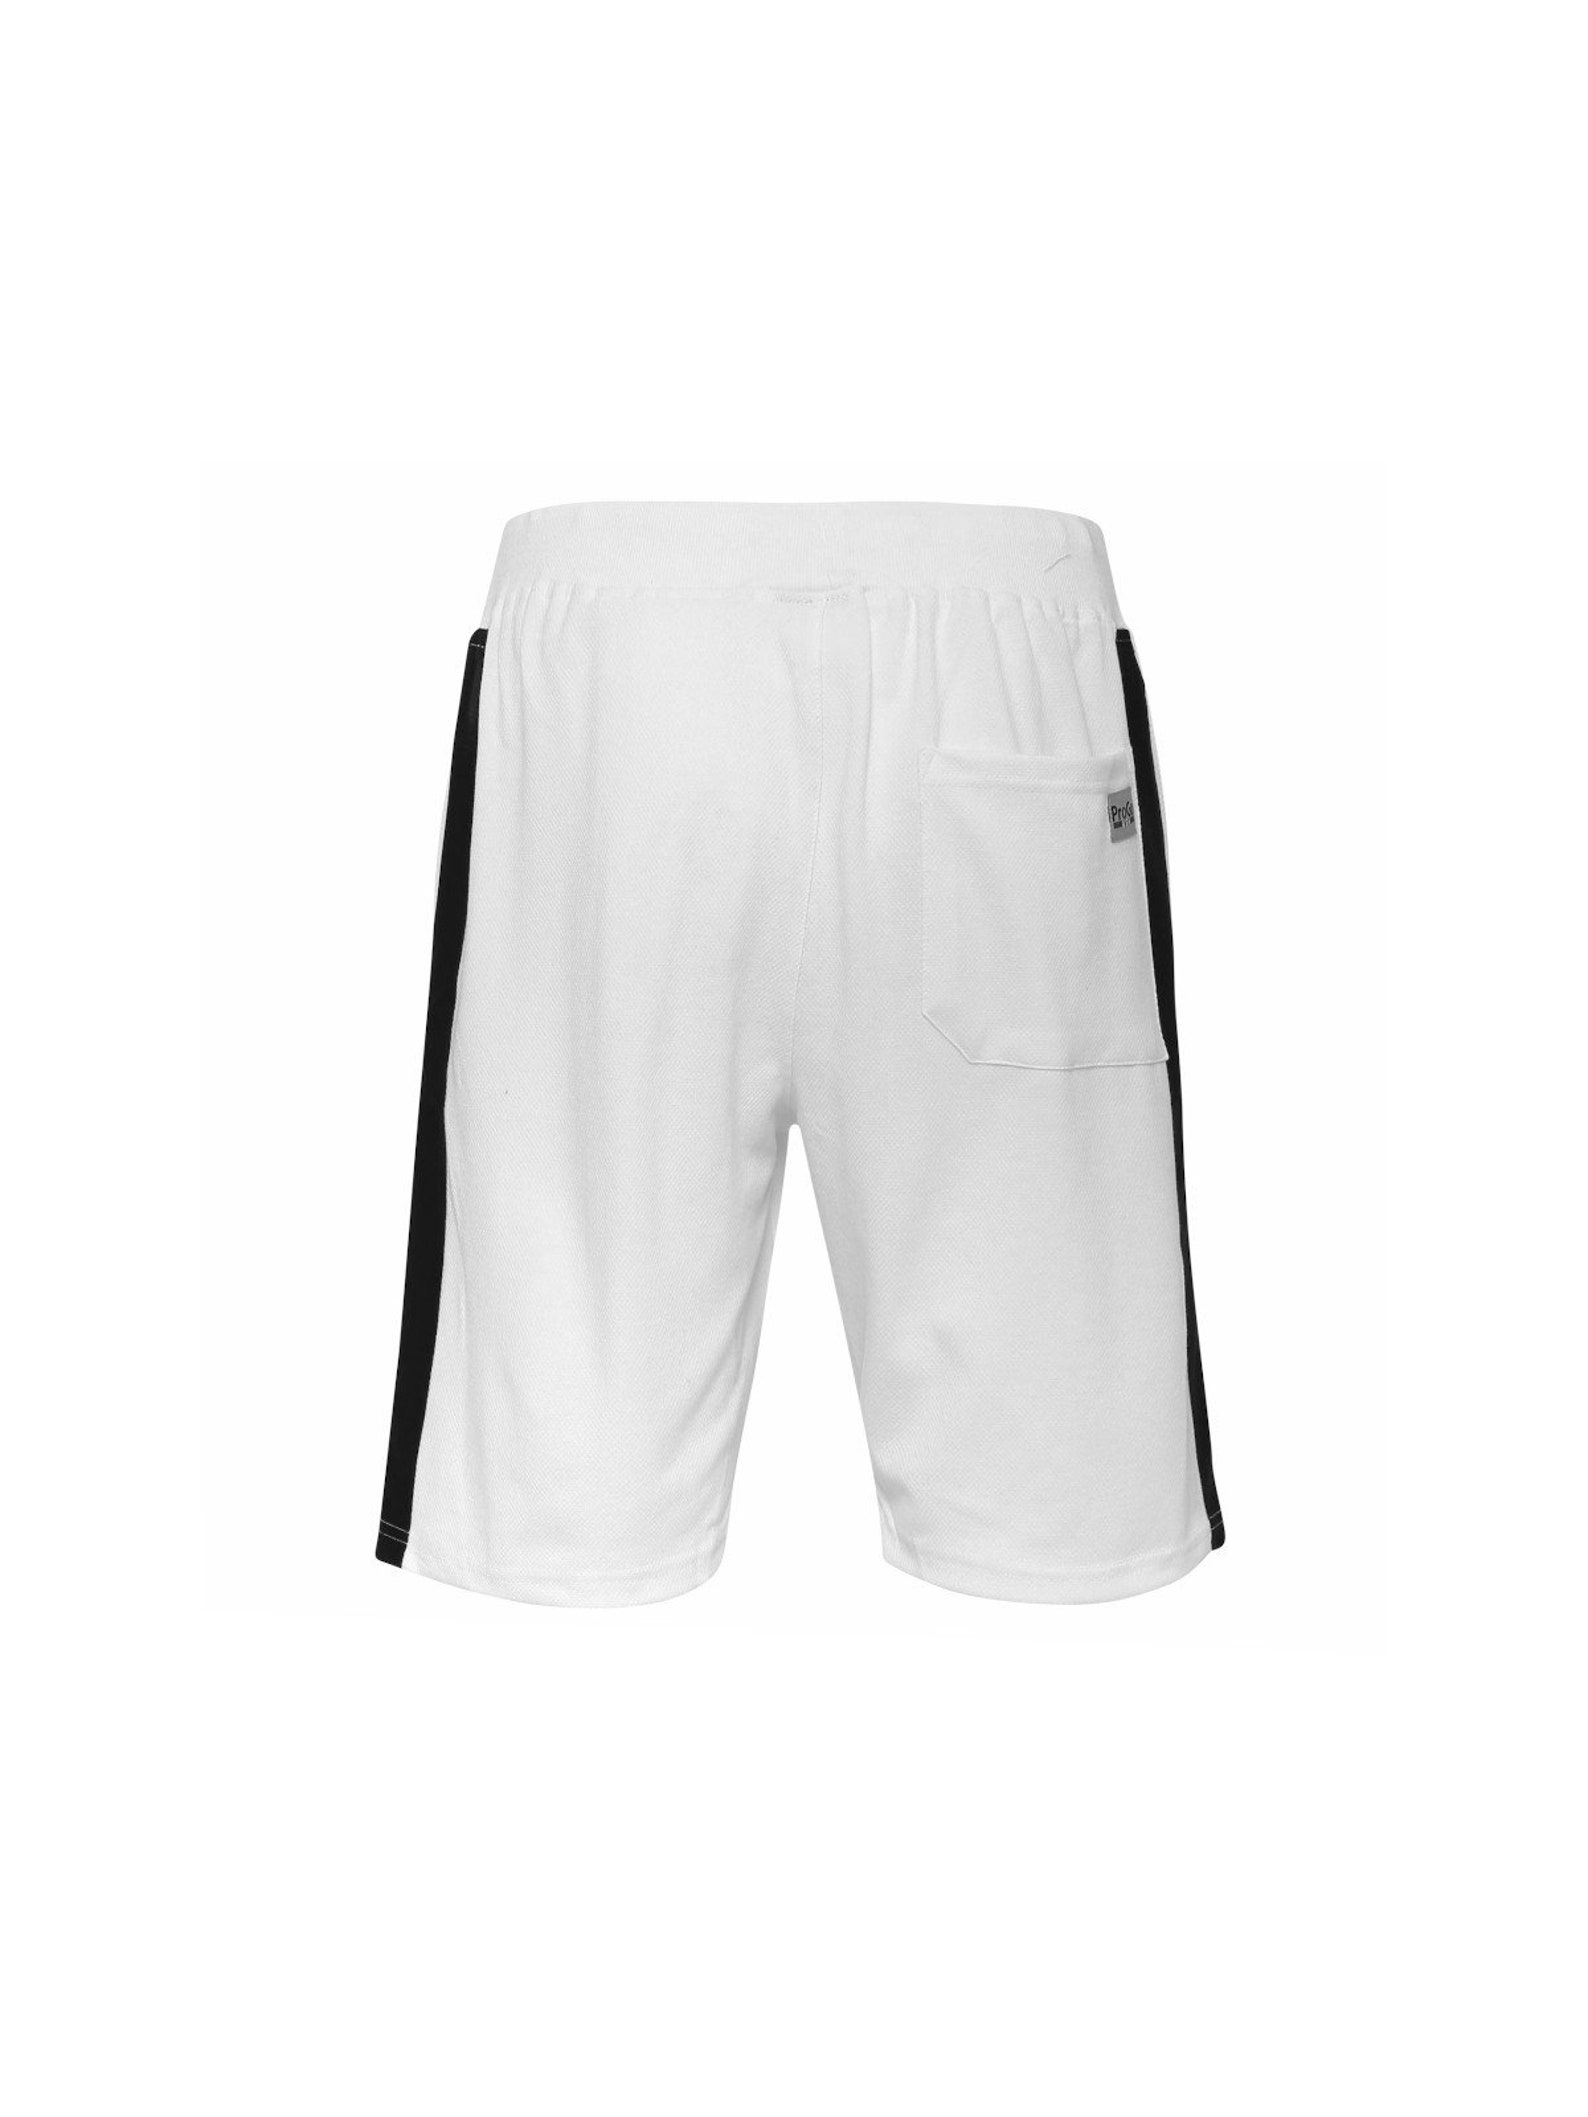 Progo Men's Athletic Premium Short Pants Workout Pants - Etsy